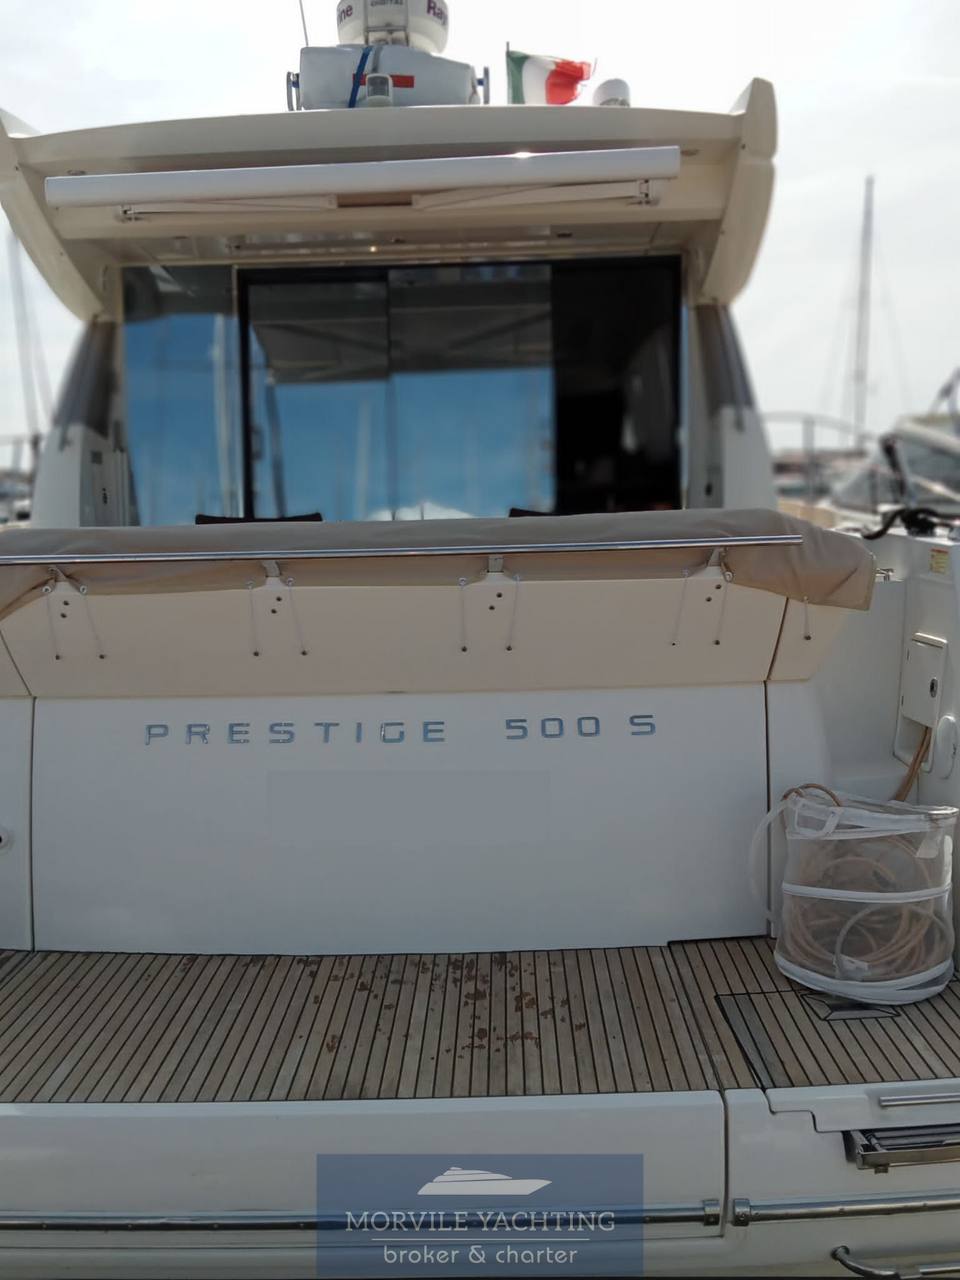 Prestige 500 s 硬顶